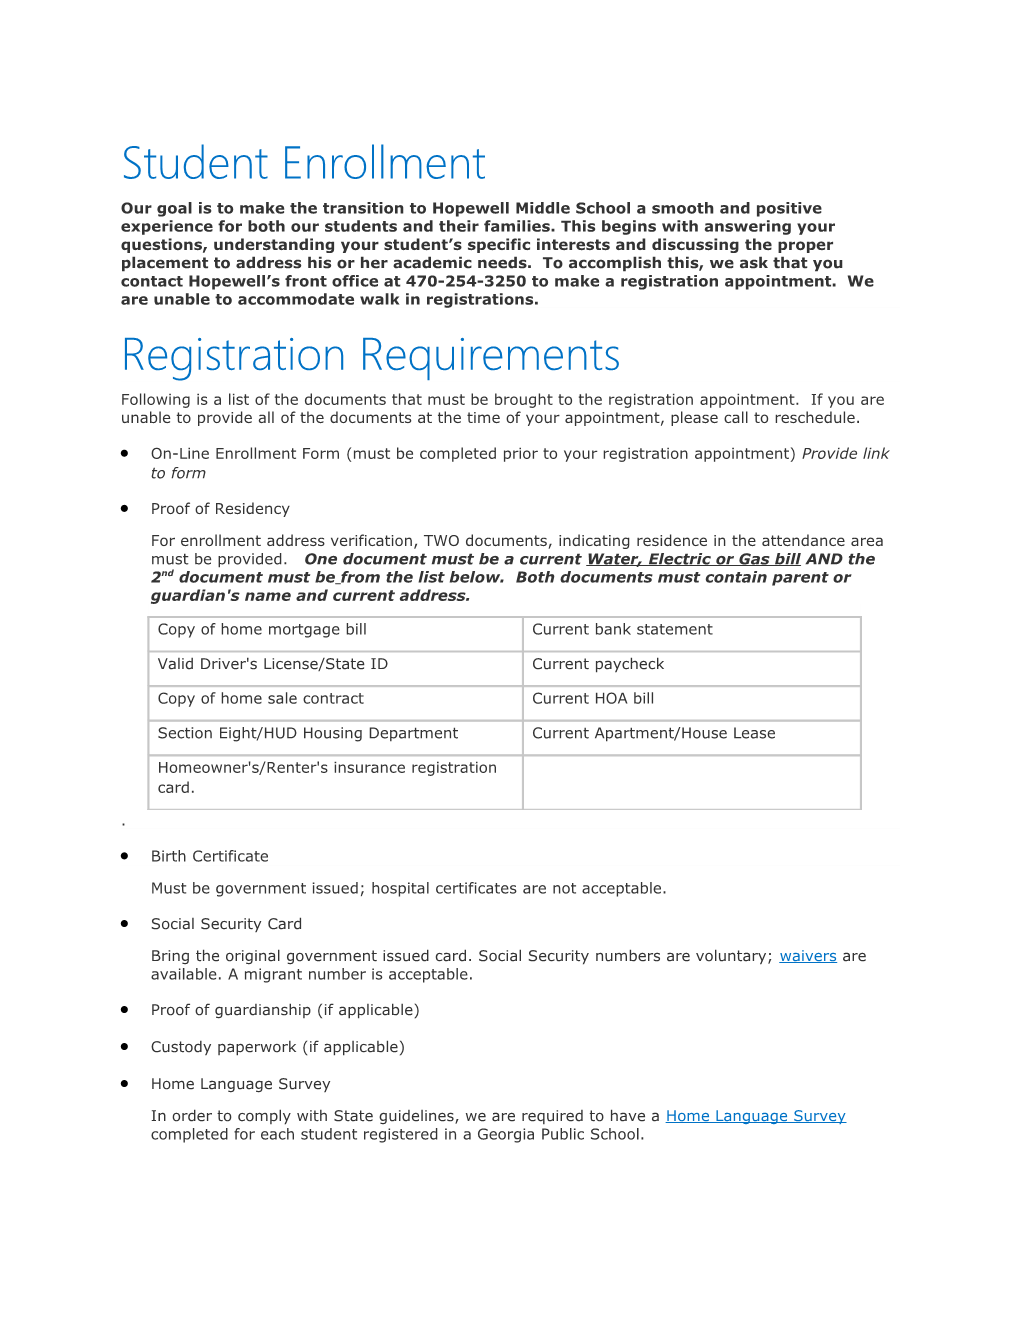 Revised Summer Enrollement Info